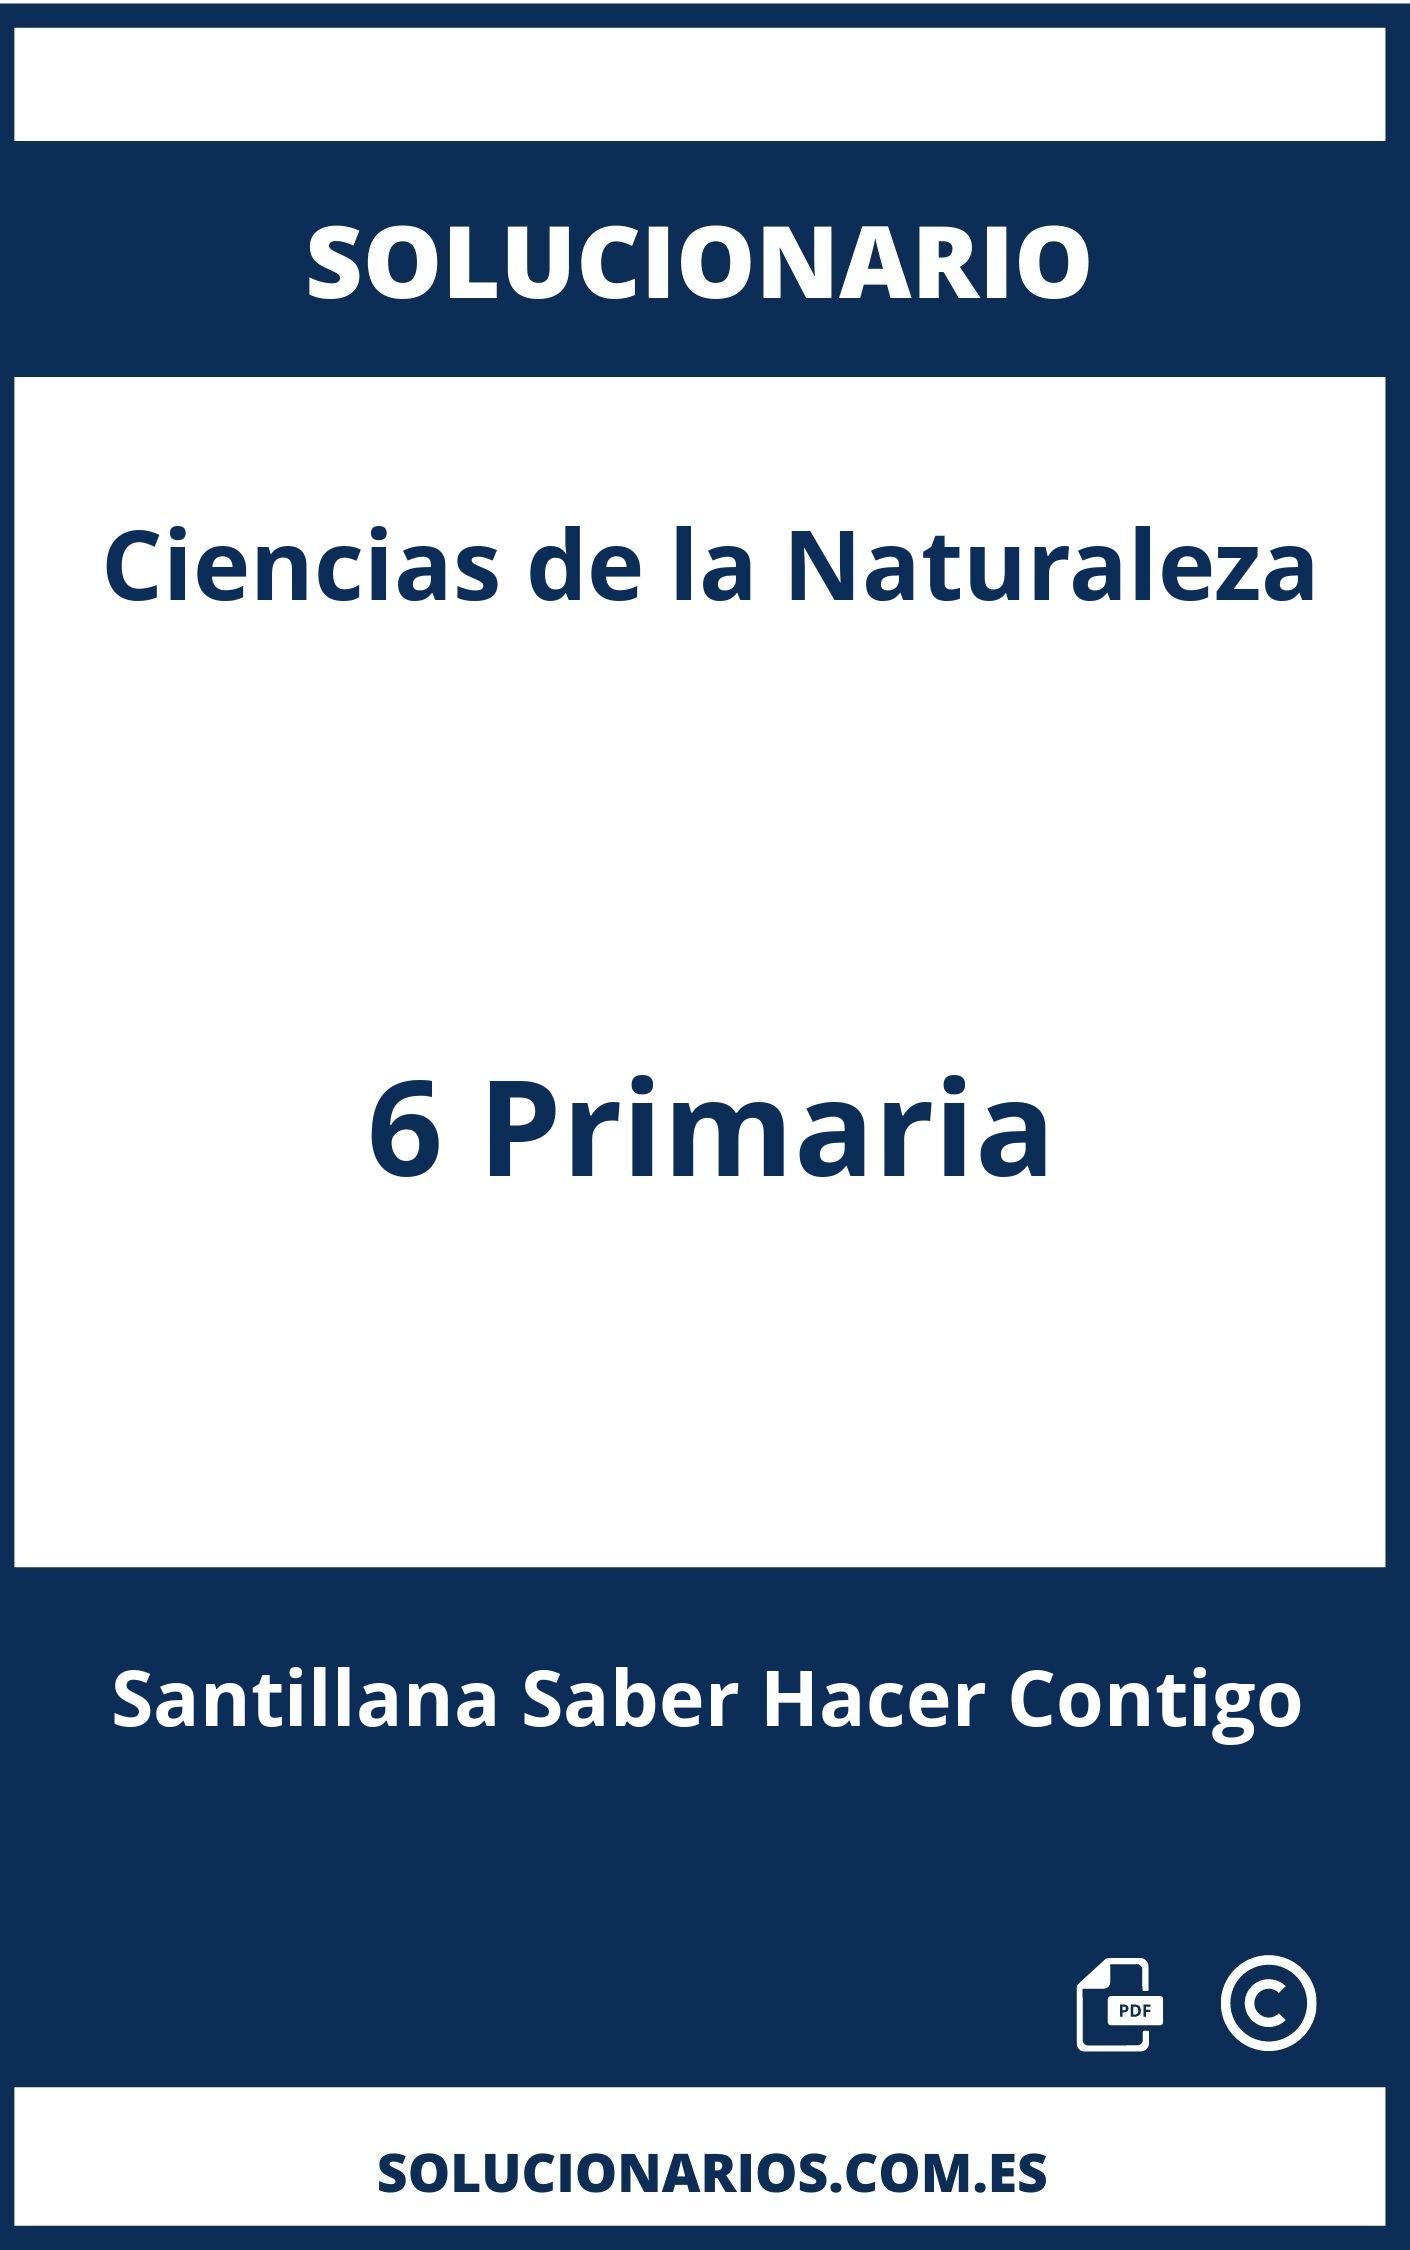 Solucionario Ciencias de la Naturaleza 6 Primaria Santillana Saber Hacer Contigo